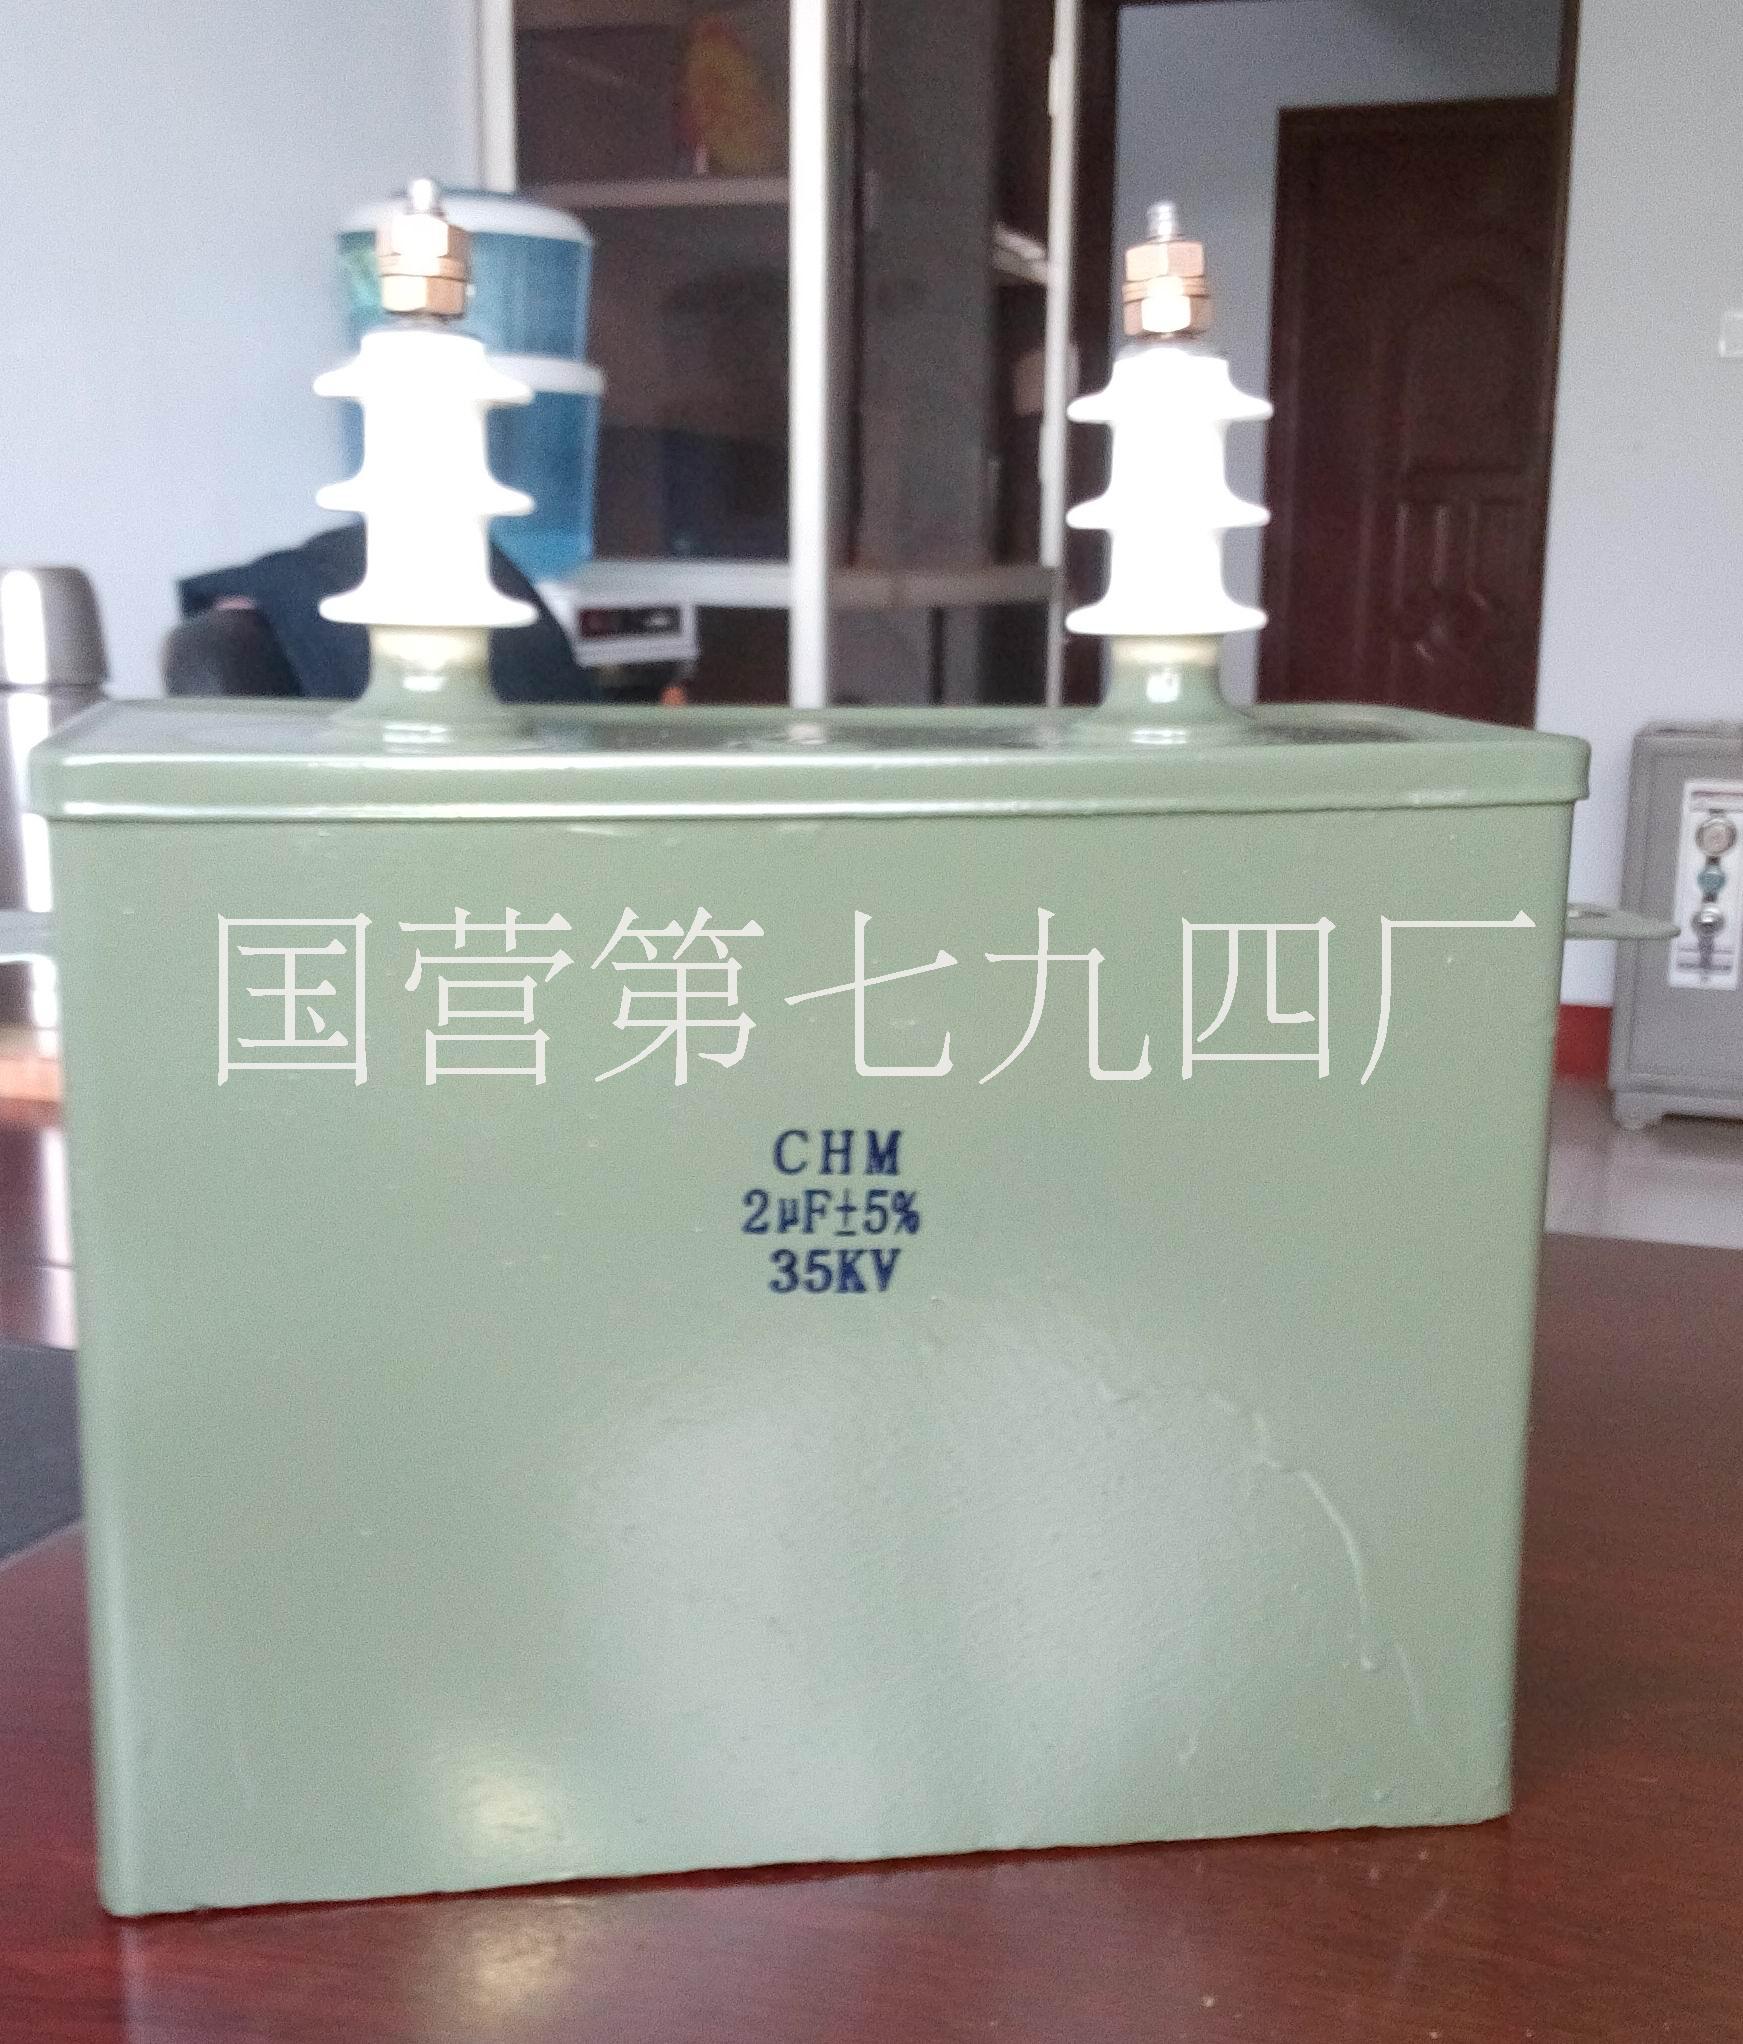 河南鹤壁国营七九四厂专业生产高压油浸电容器CH82和CHM脉冲电容器